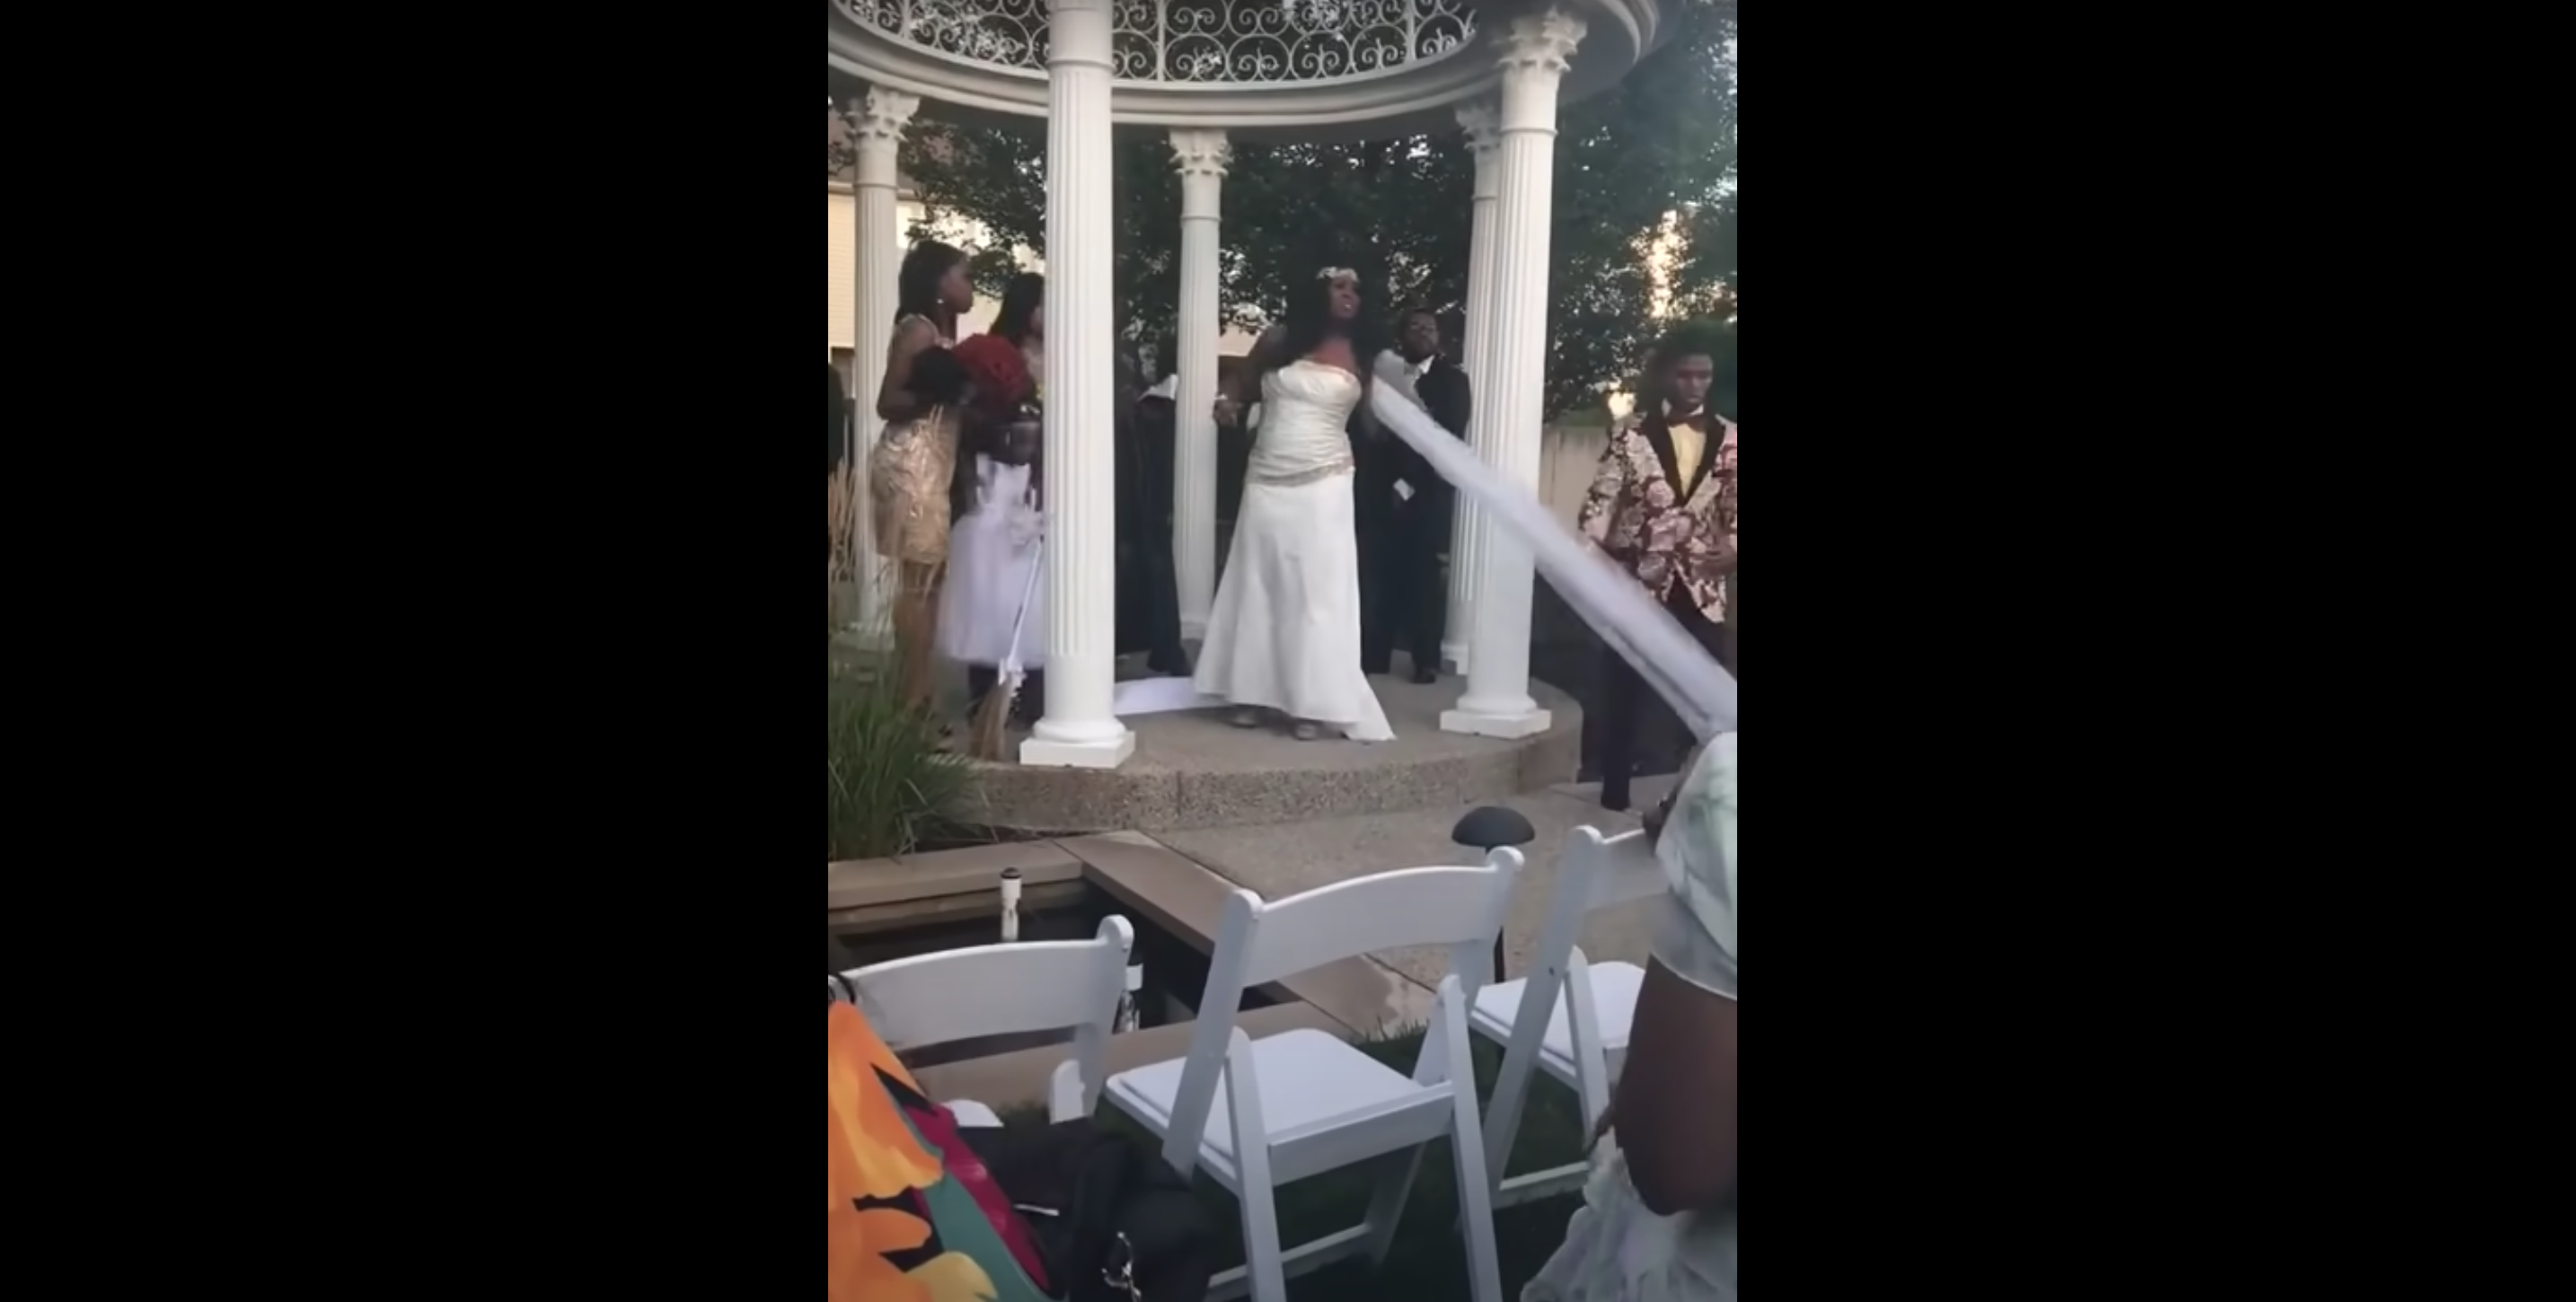 El velo de la novia se sale accidentalmente. | Foto: Youtube.com/Toneciaga